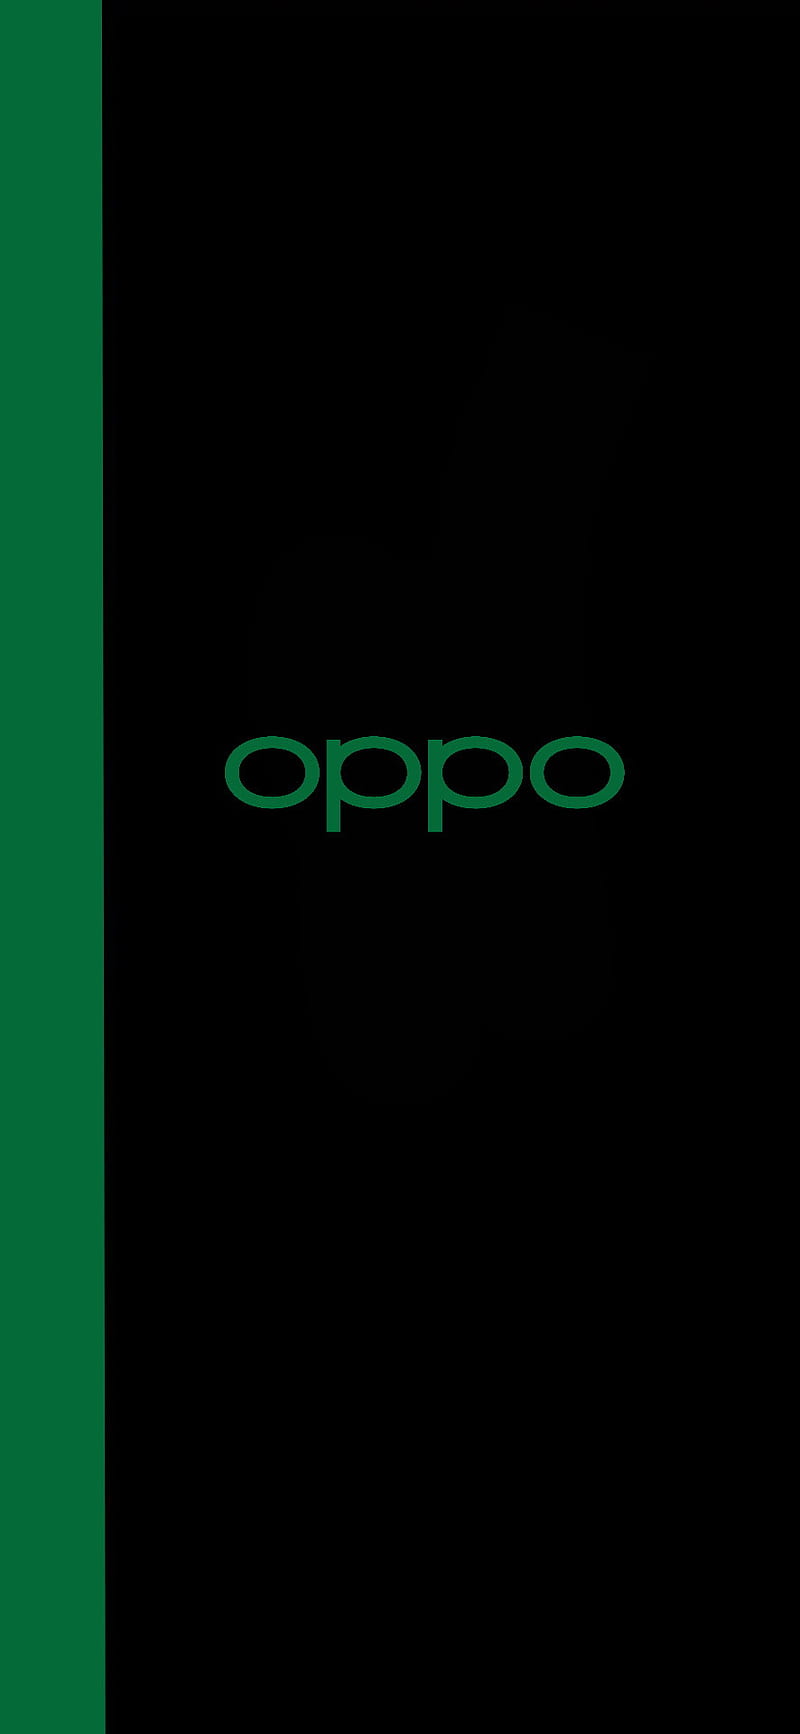 OPPO chính thức ra mắt ColorOS 11, cho phép cập nhật ngay từ bây giờ